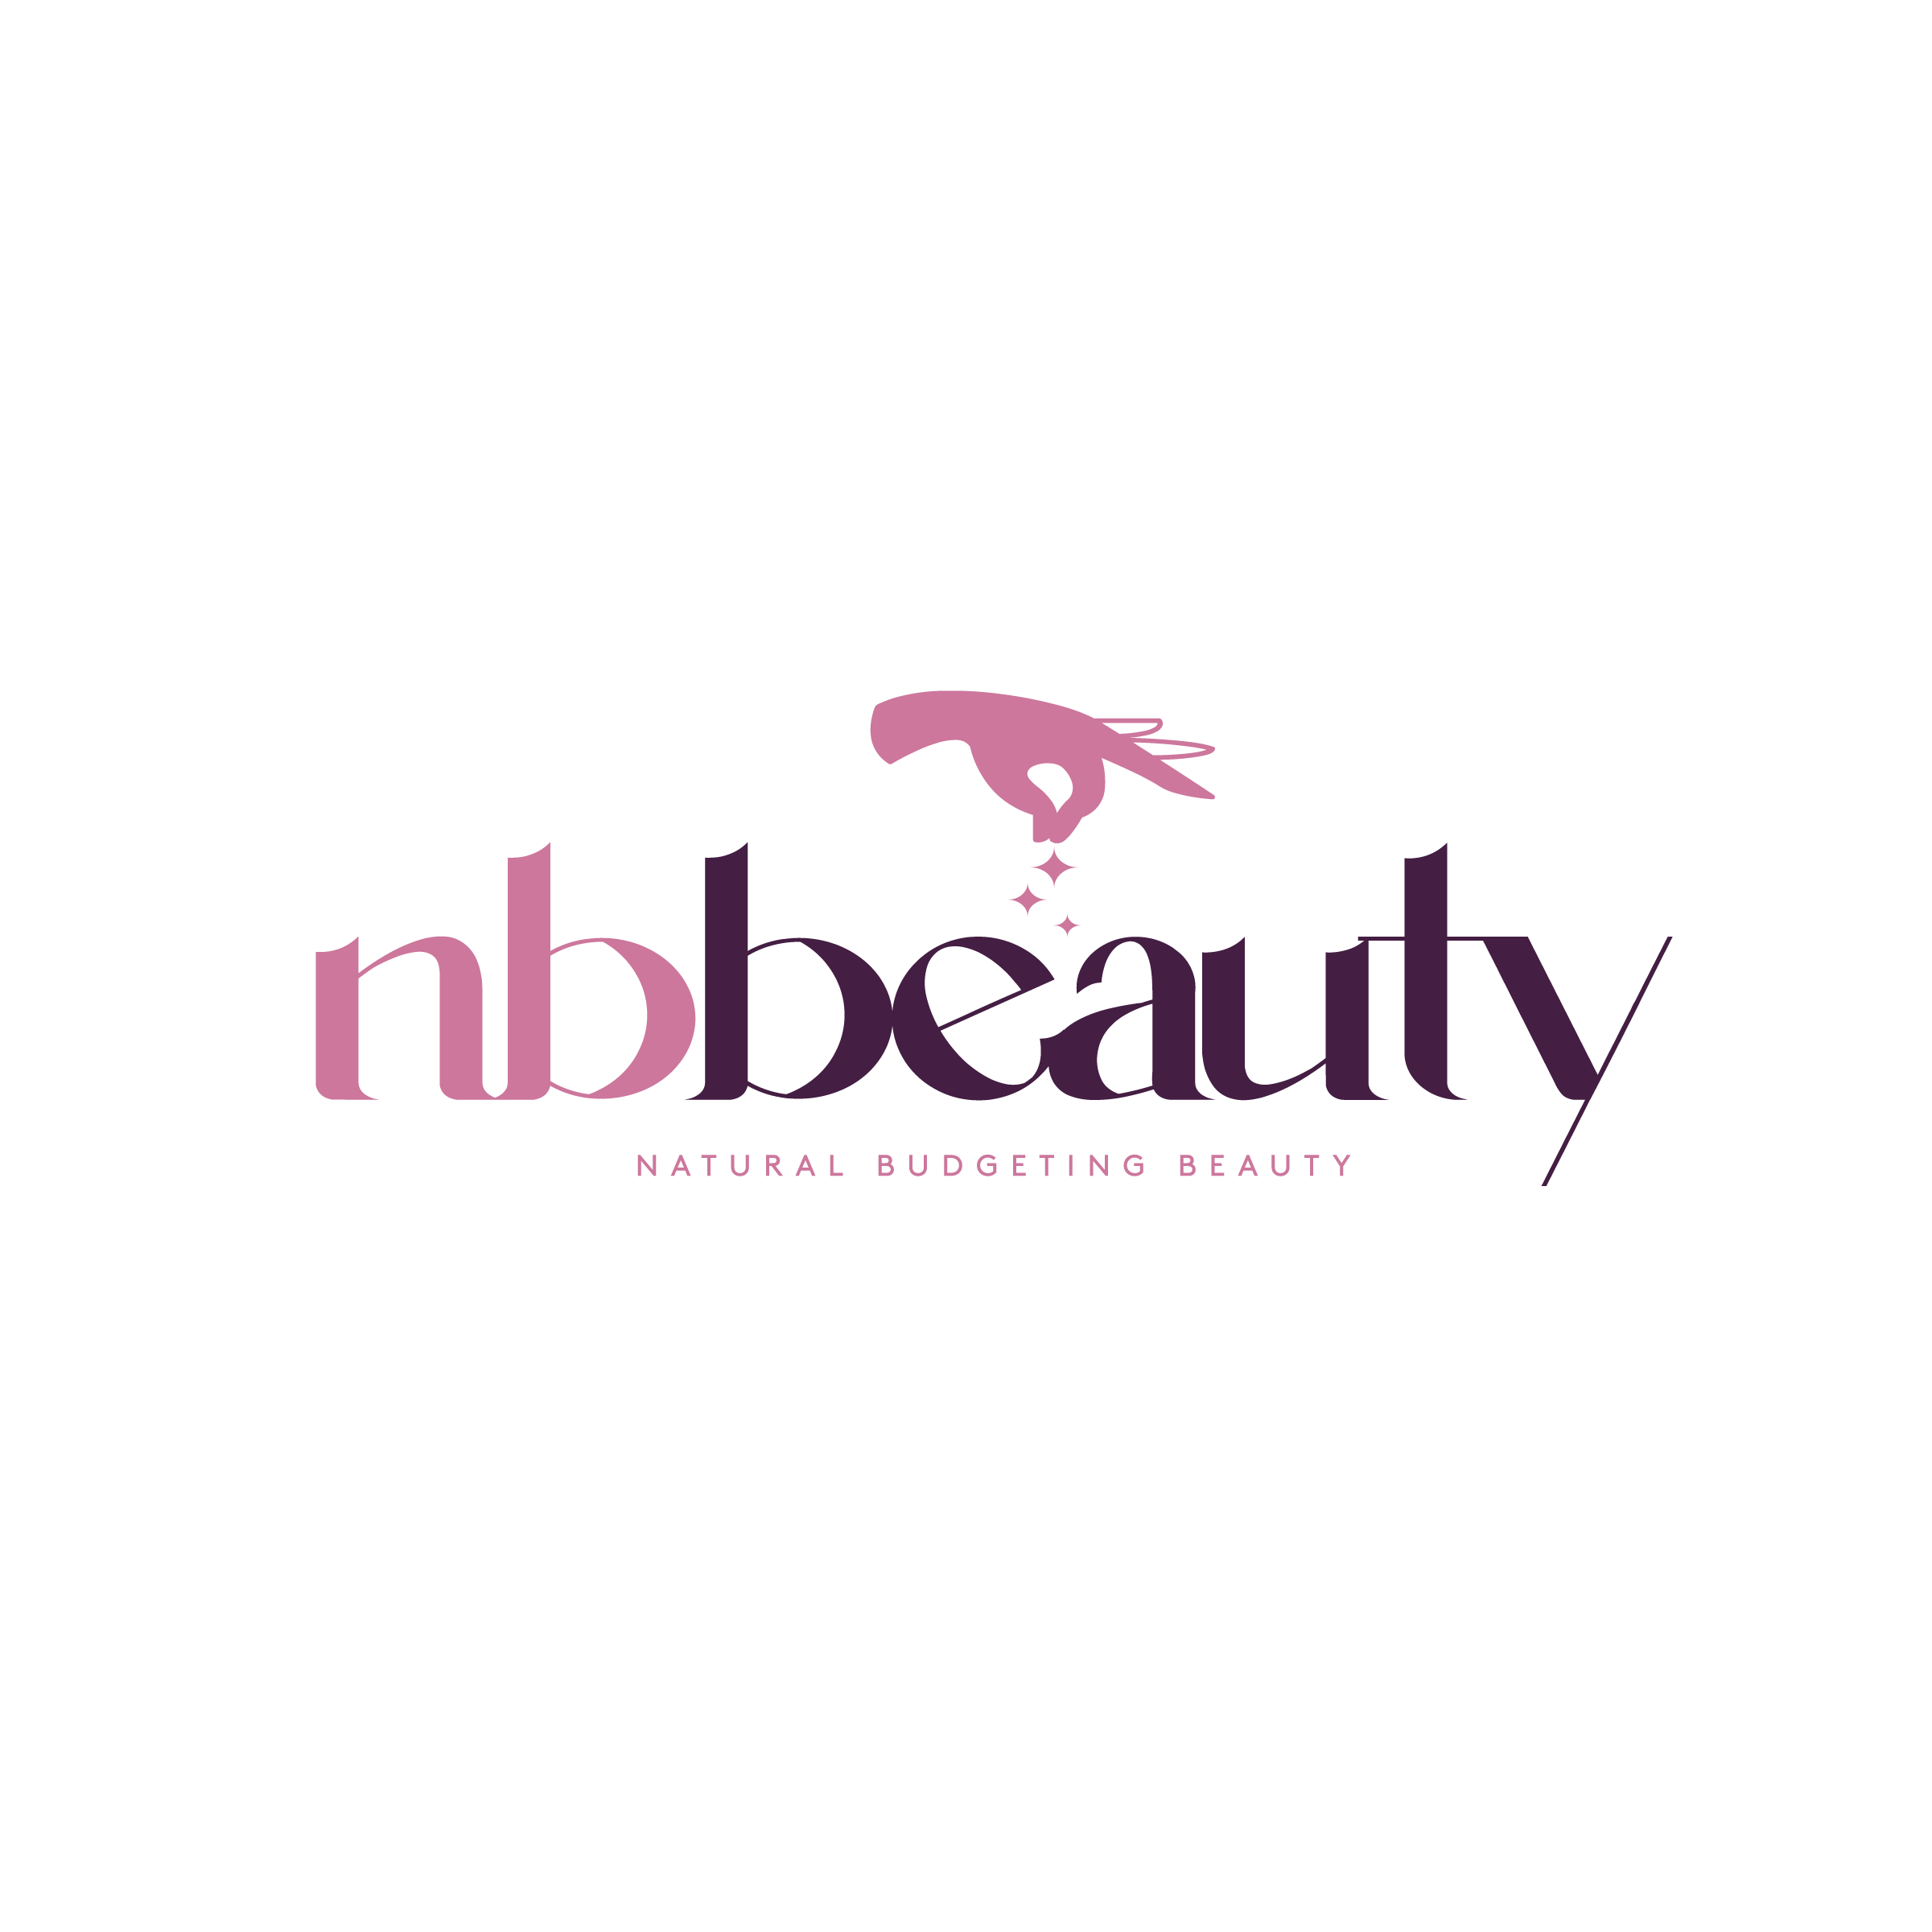 Natural-Budgeting-Beauty-